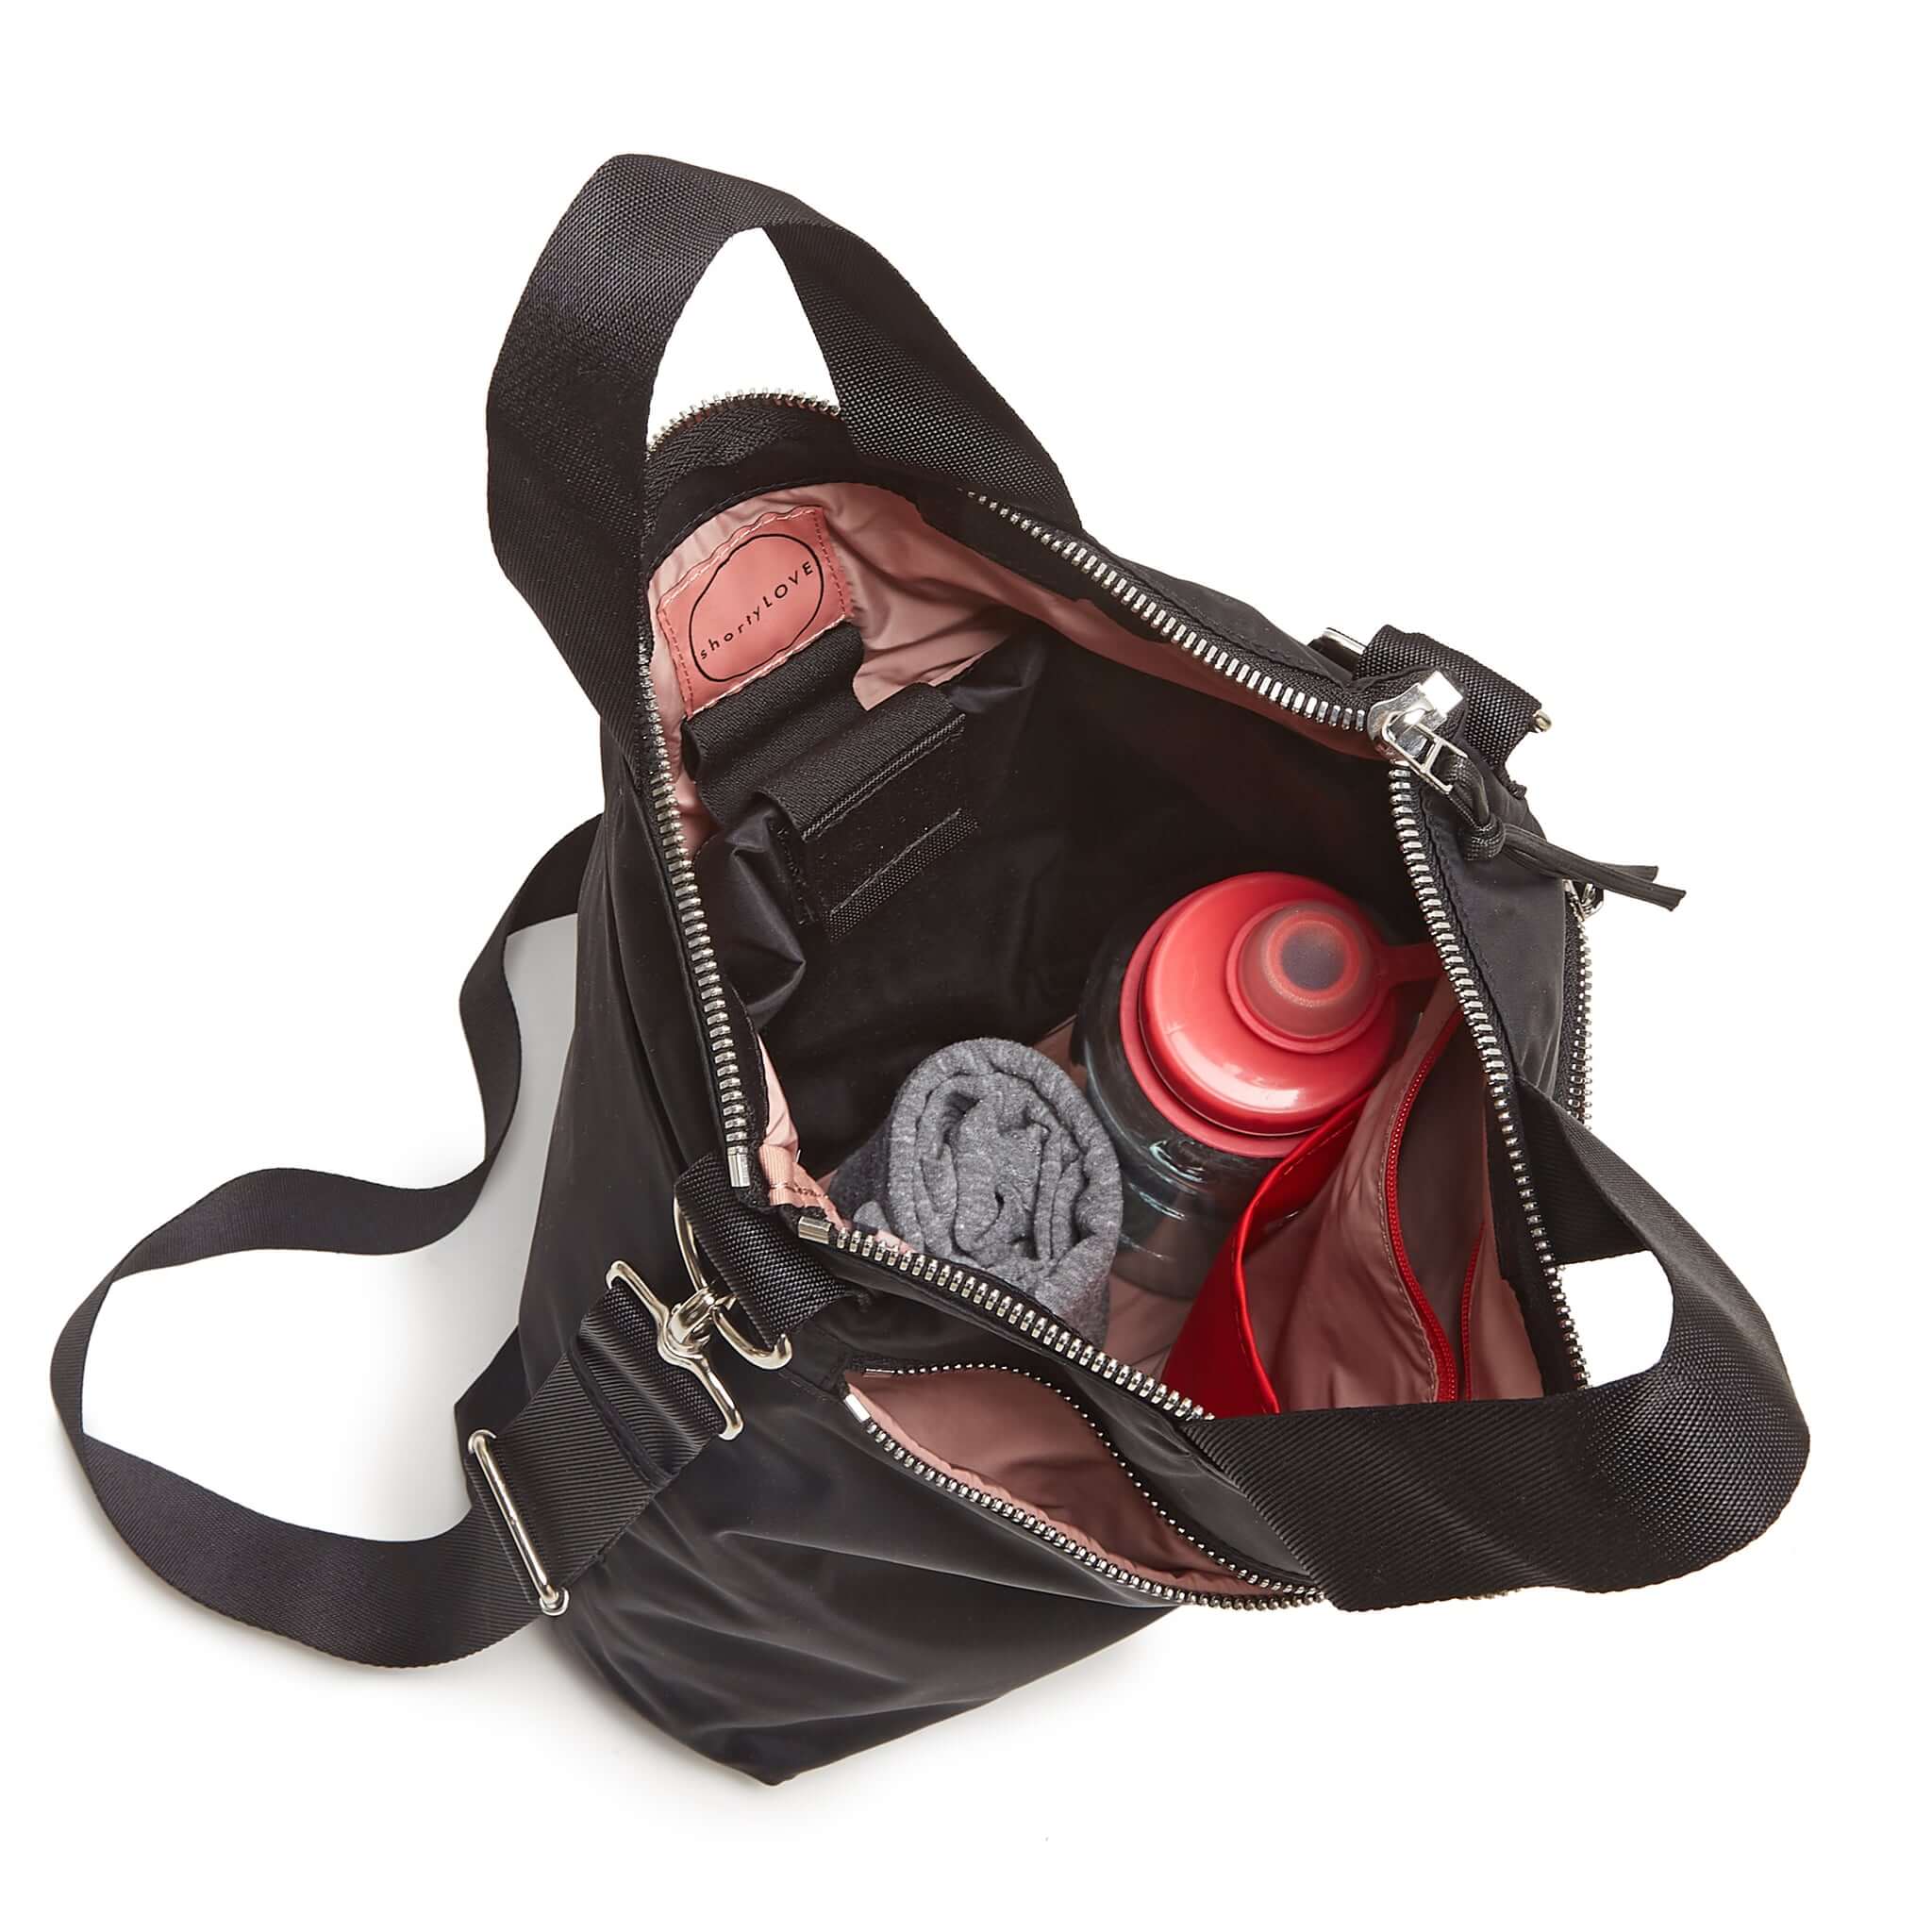 MO - Top Quality Bags LUV 006  Bags, Top handbags, Fashion bags